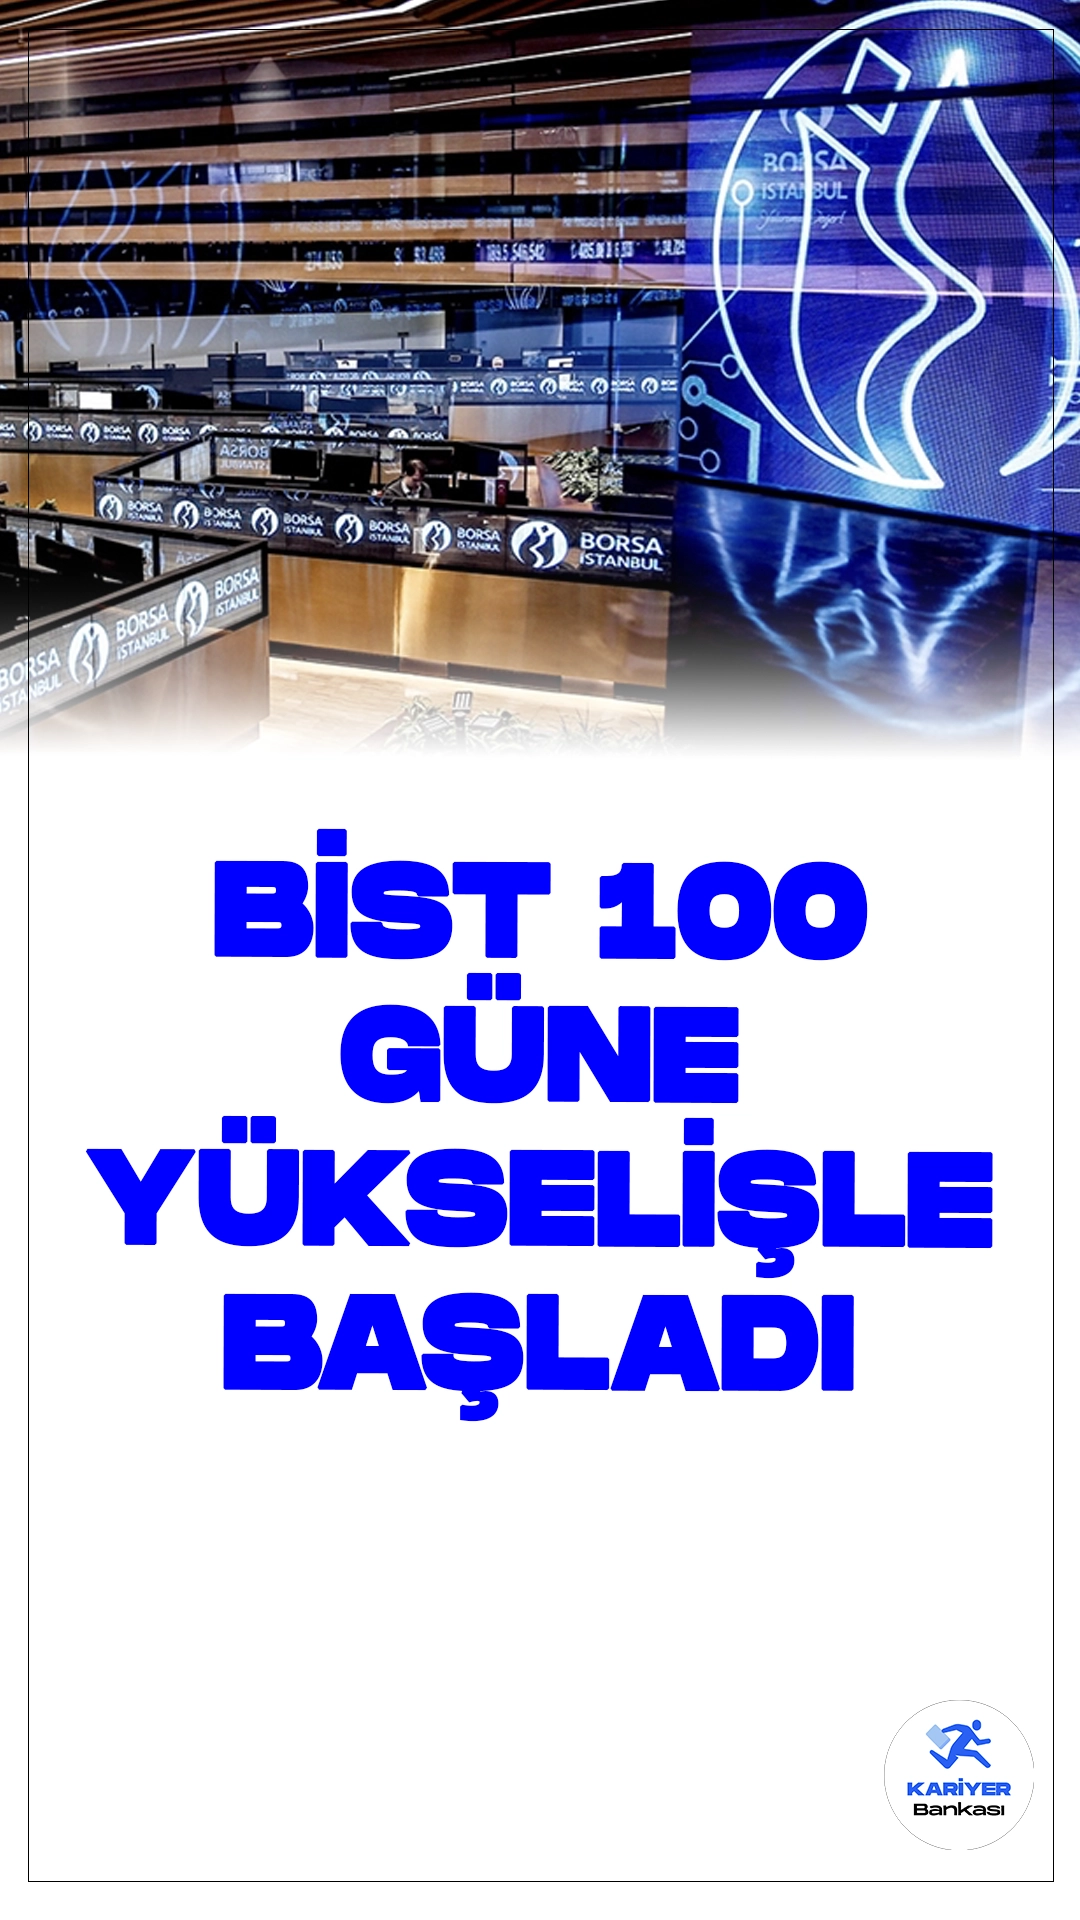 BIST 100 Güne Yükselişle Başladı.Borsa İstanbul'da BIST 100 endeksi, güne yüzde 0,19 yükselerek 10.576,56 puandan başladı.